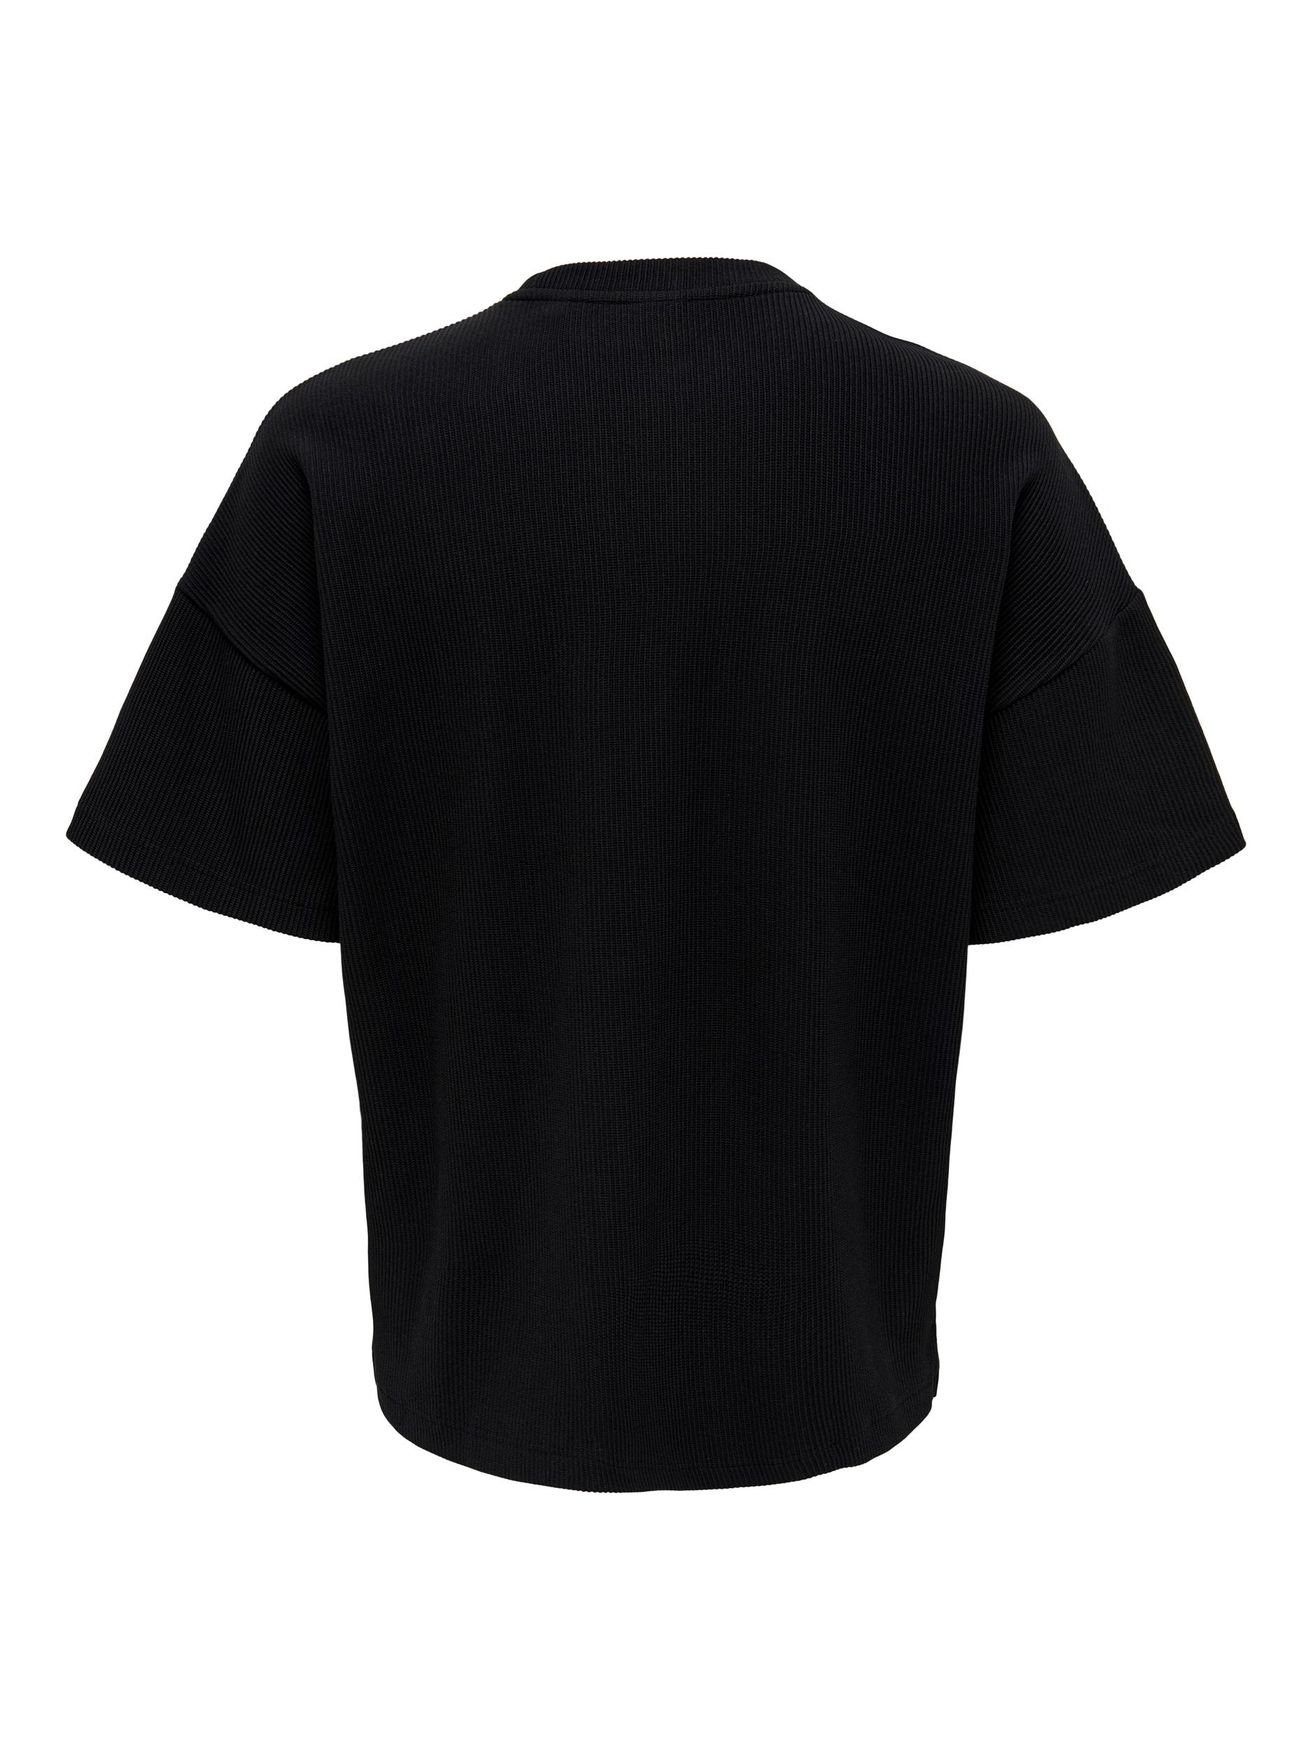 Kurzarm in ONSBERKELEY T-Shirt Shirt T-Shirt Basic ONLY & Rundhals Weites 4791 Schwarz SONS